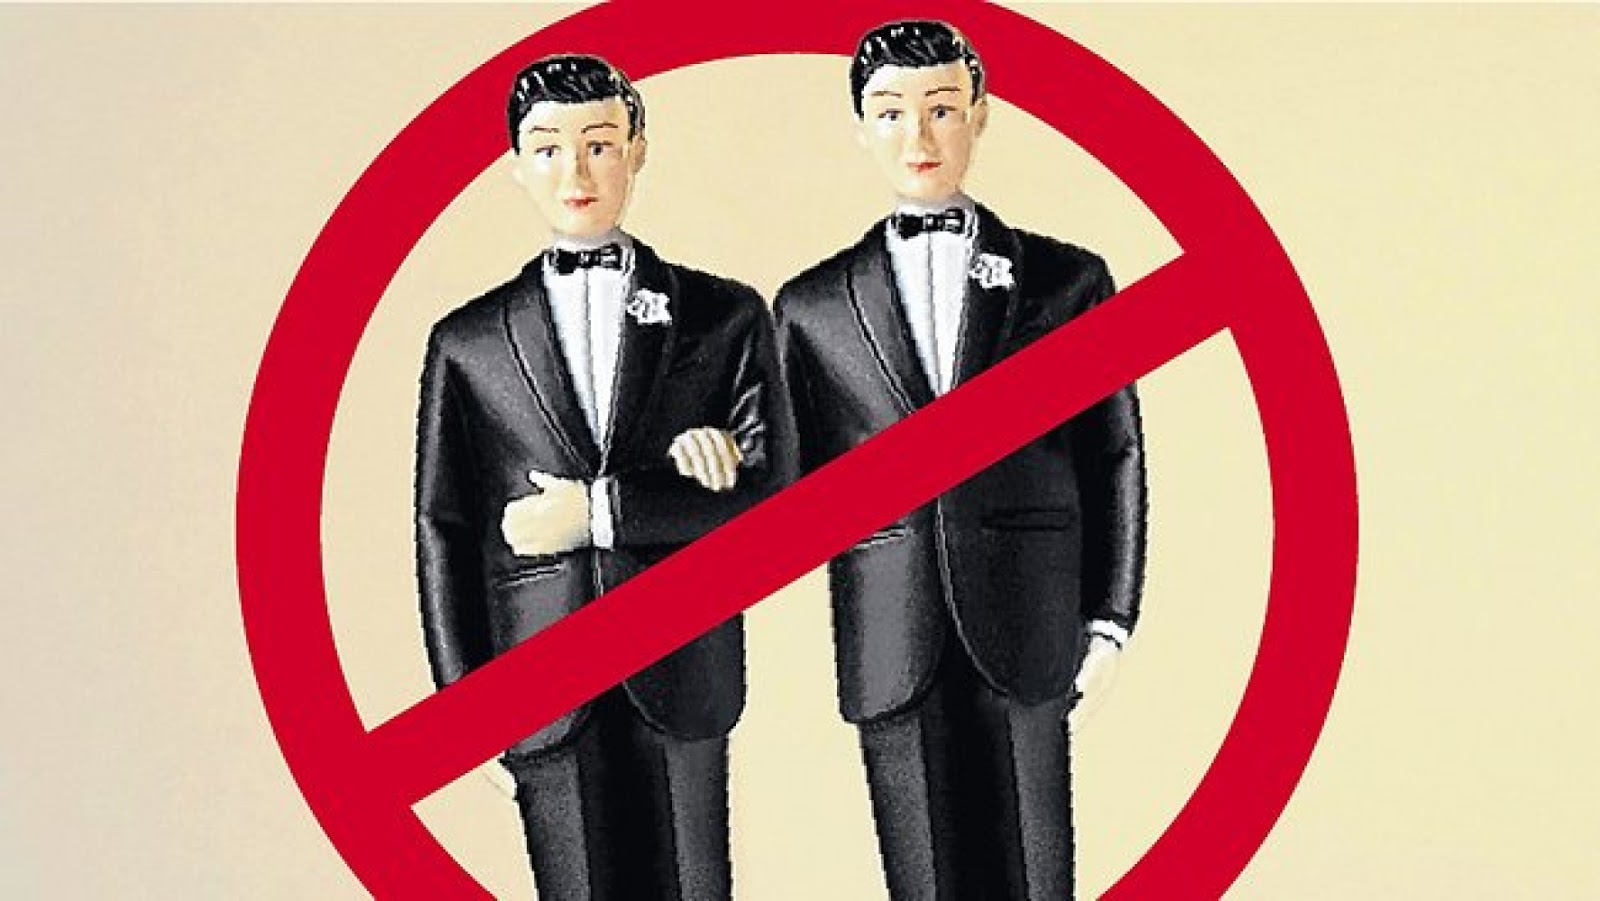 Запрет свадеб. Против однополых браков. Однополые браки запрещены. Однополые браки и гомосексуализм. Запрет однополых браков картинки.